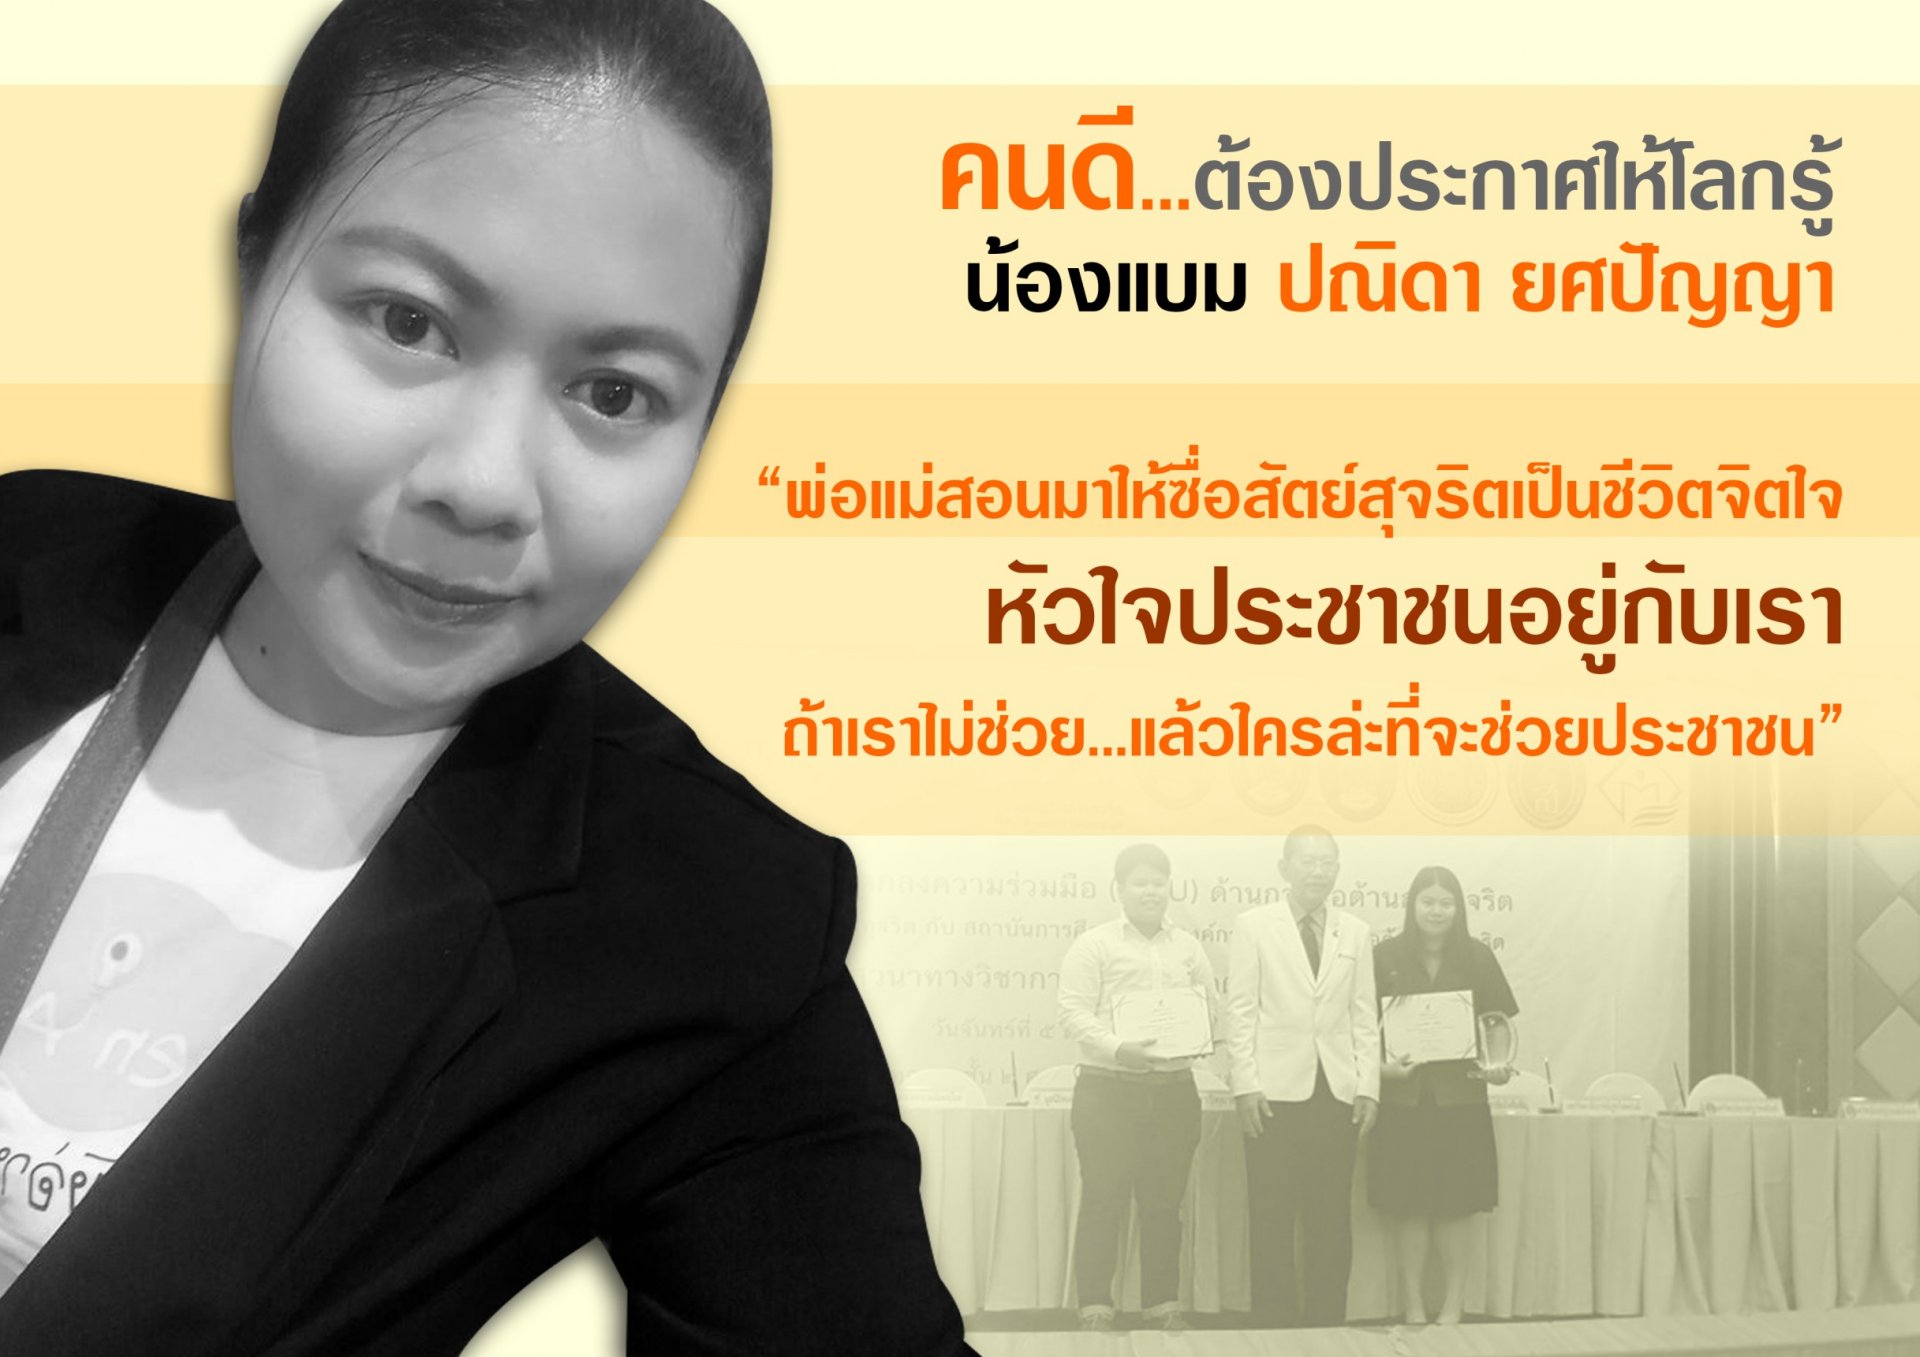 รายการ “คนไทยไม่ทนต่อการทุจริต” วันอาทิตย์ที่ 11 มีนาคม 2561 เวลา 18.20-1900 น.